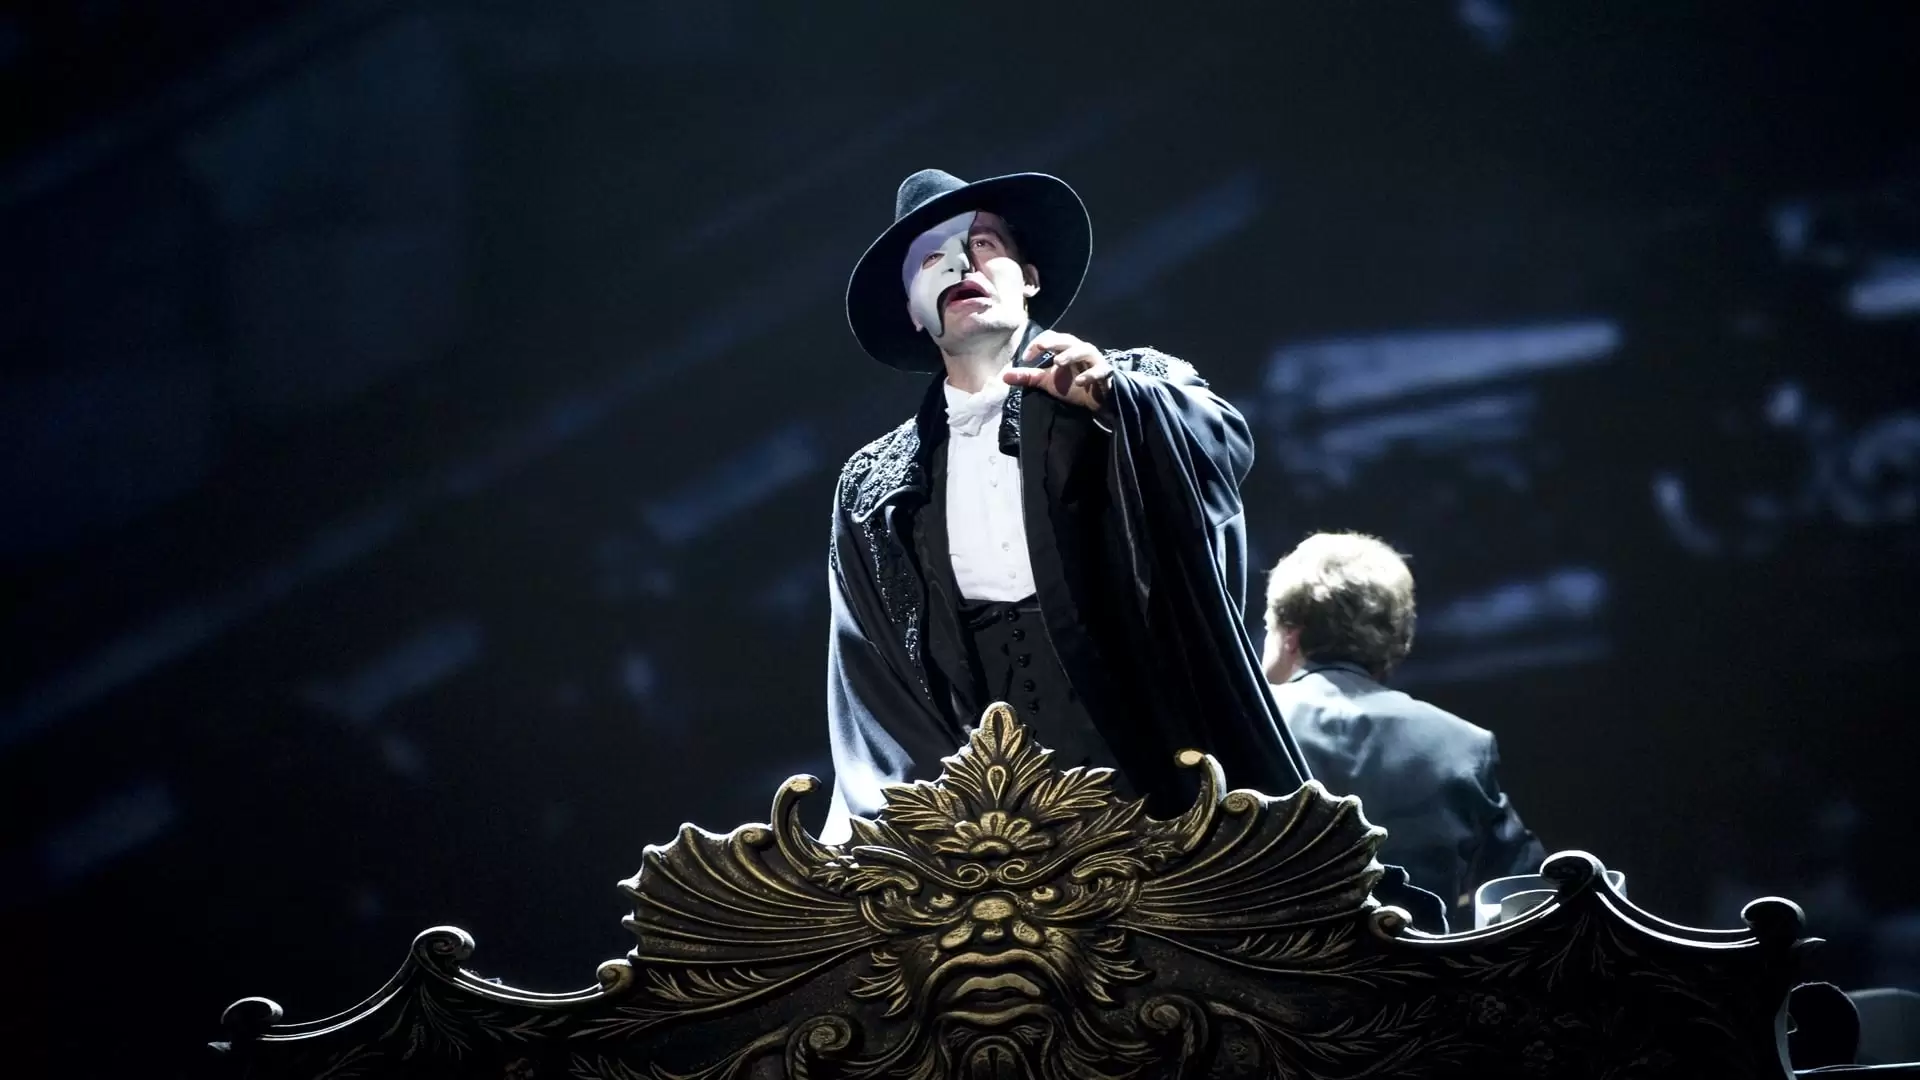 دانلود فیلم The Phantom of the Opera at the Royal Albert Hall 2011 با زیرنویس فارسی و تماشای آنلاین